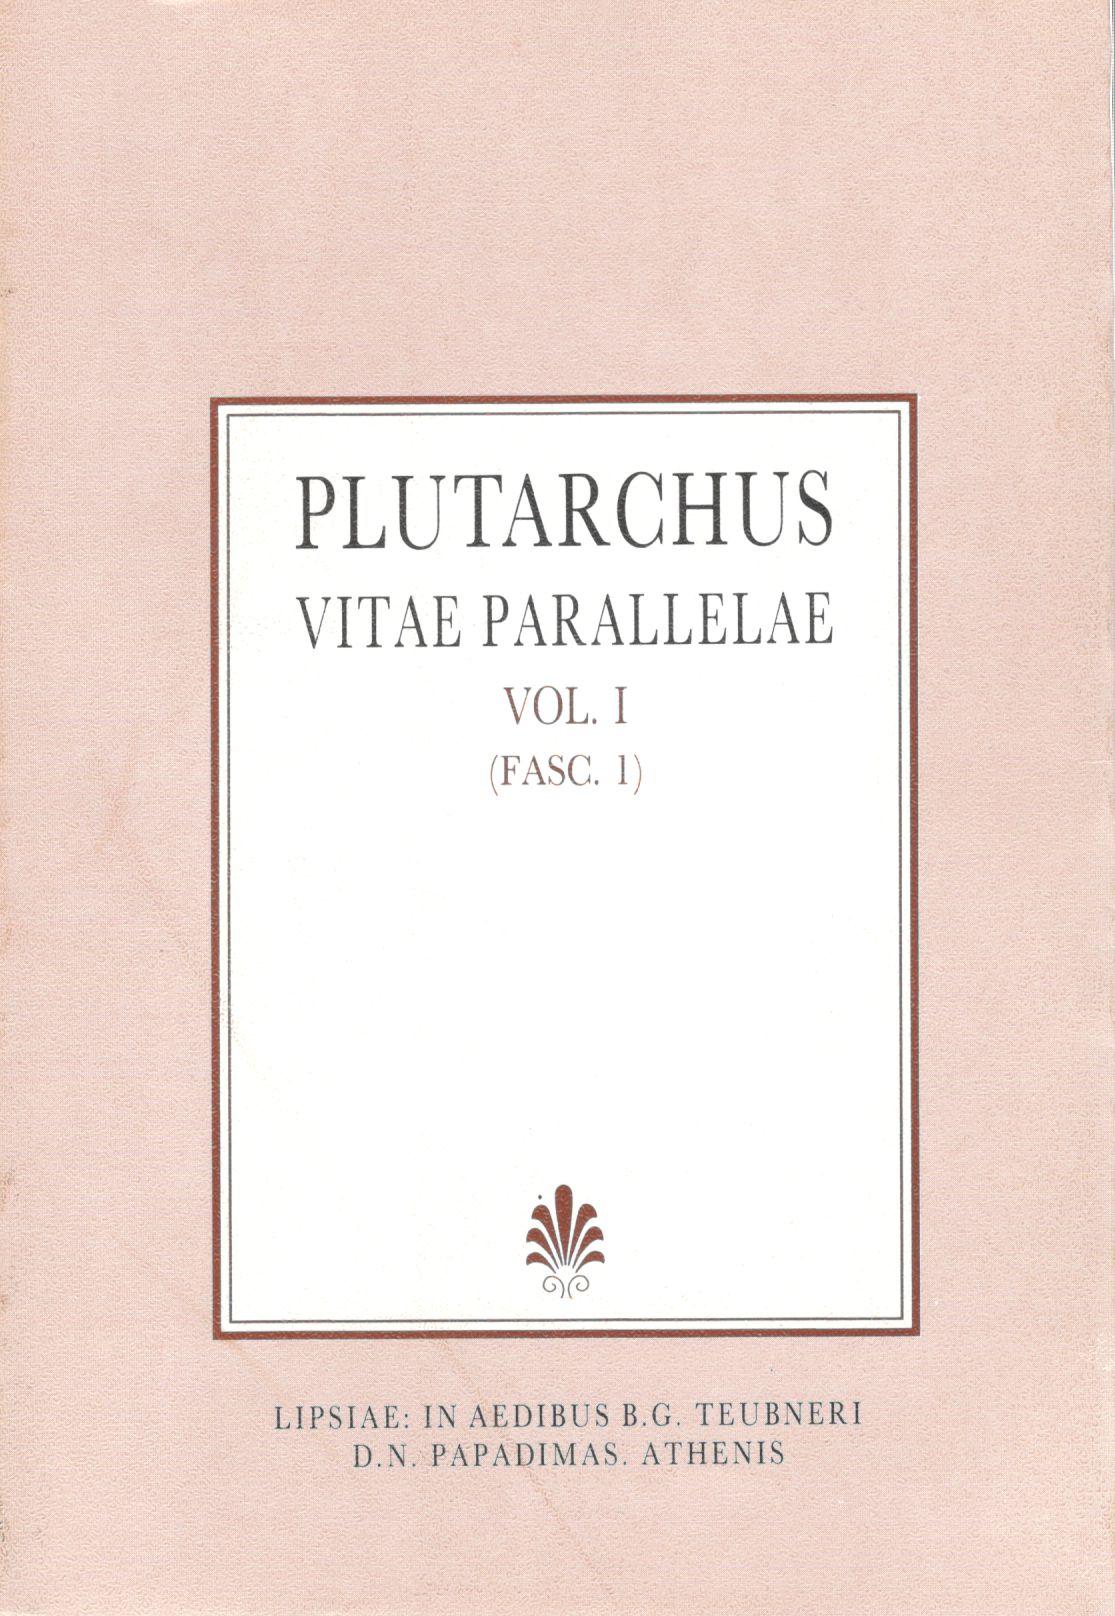 Plutarchi, Vitae Parallelae, Vol. I, (Fasc. 1), [Πλουτάρχου, Βίοι Παράλληλοι, τ. Α